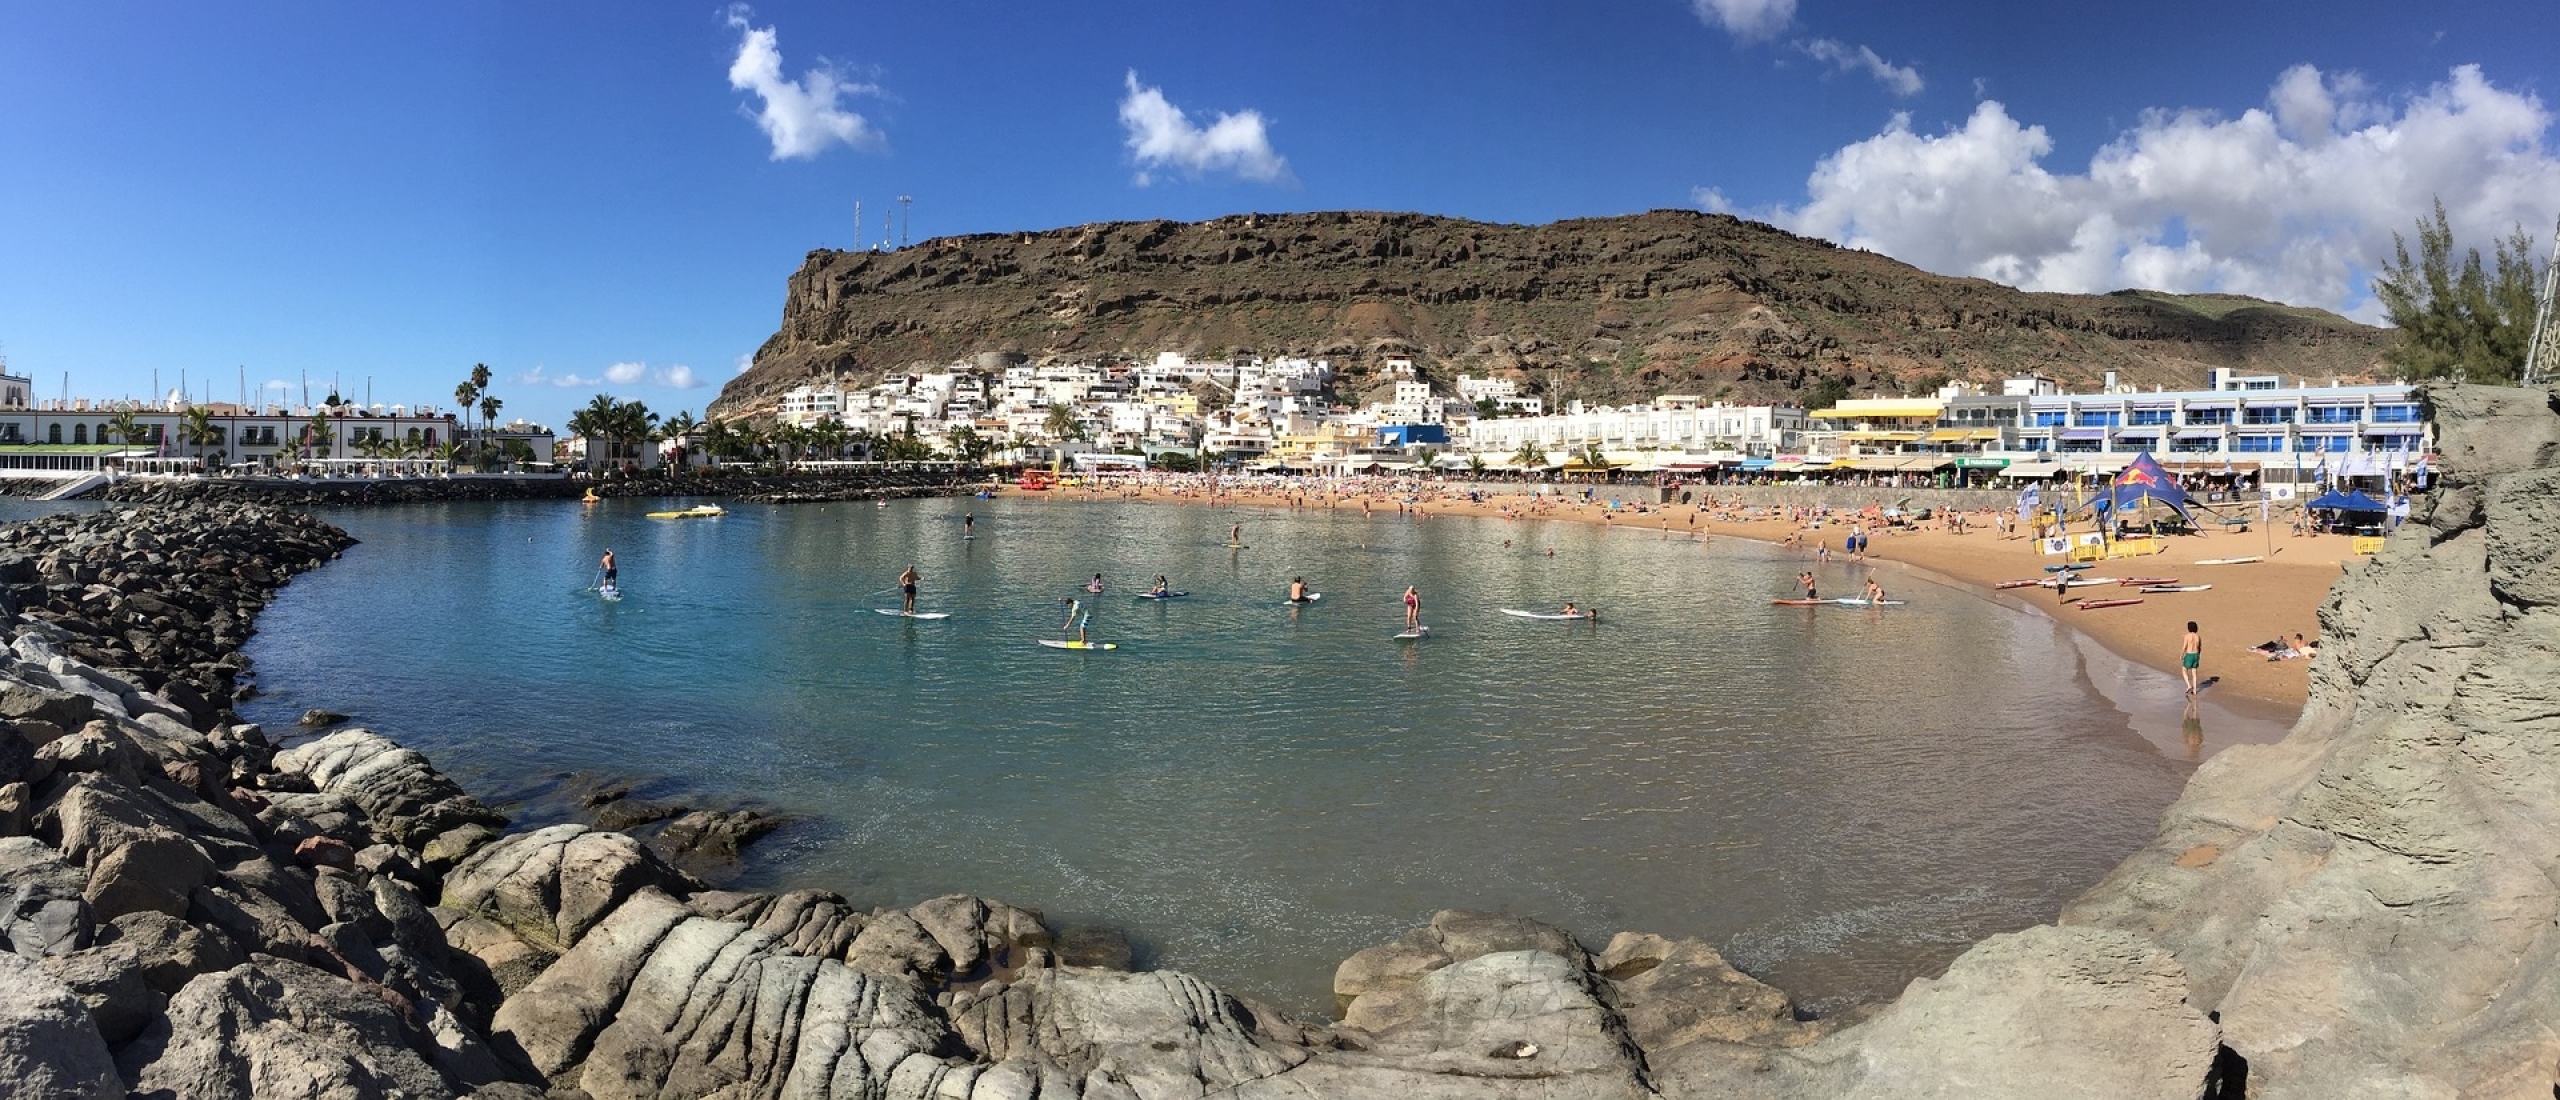 Vakantie naar Puerto de Mogán op Gran Canaria - Beste deals, tips en meer | WeezeAirport.nl